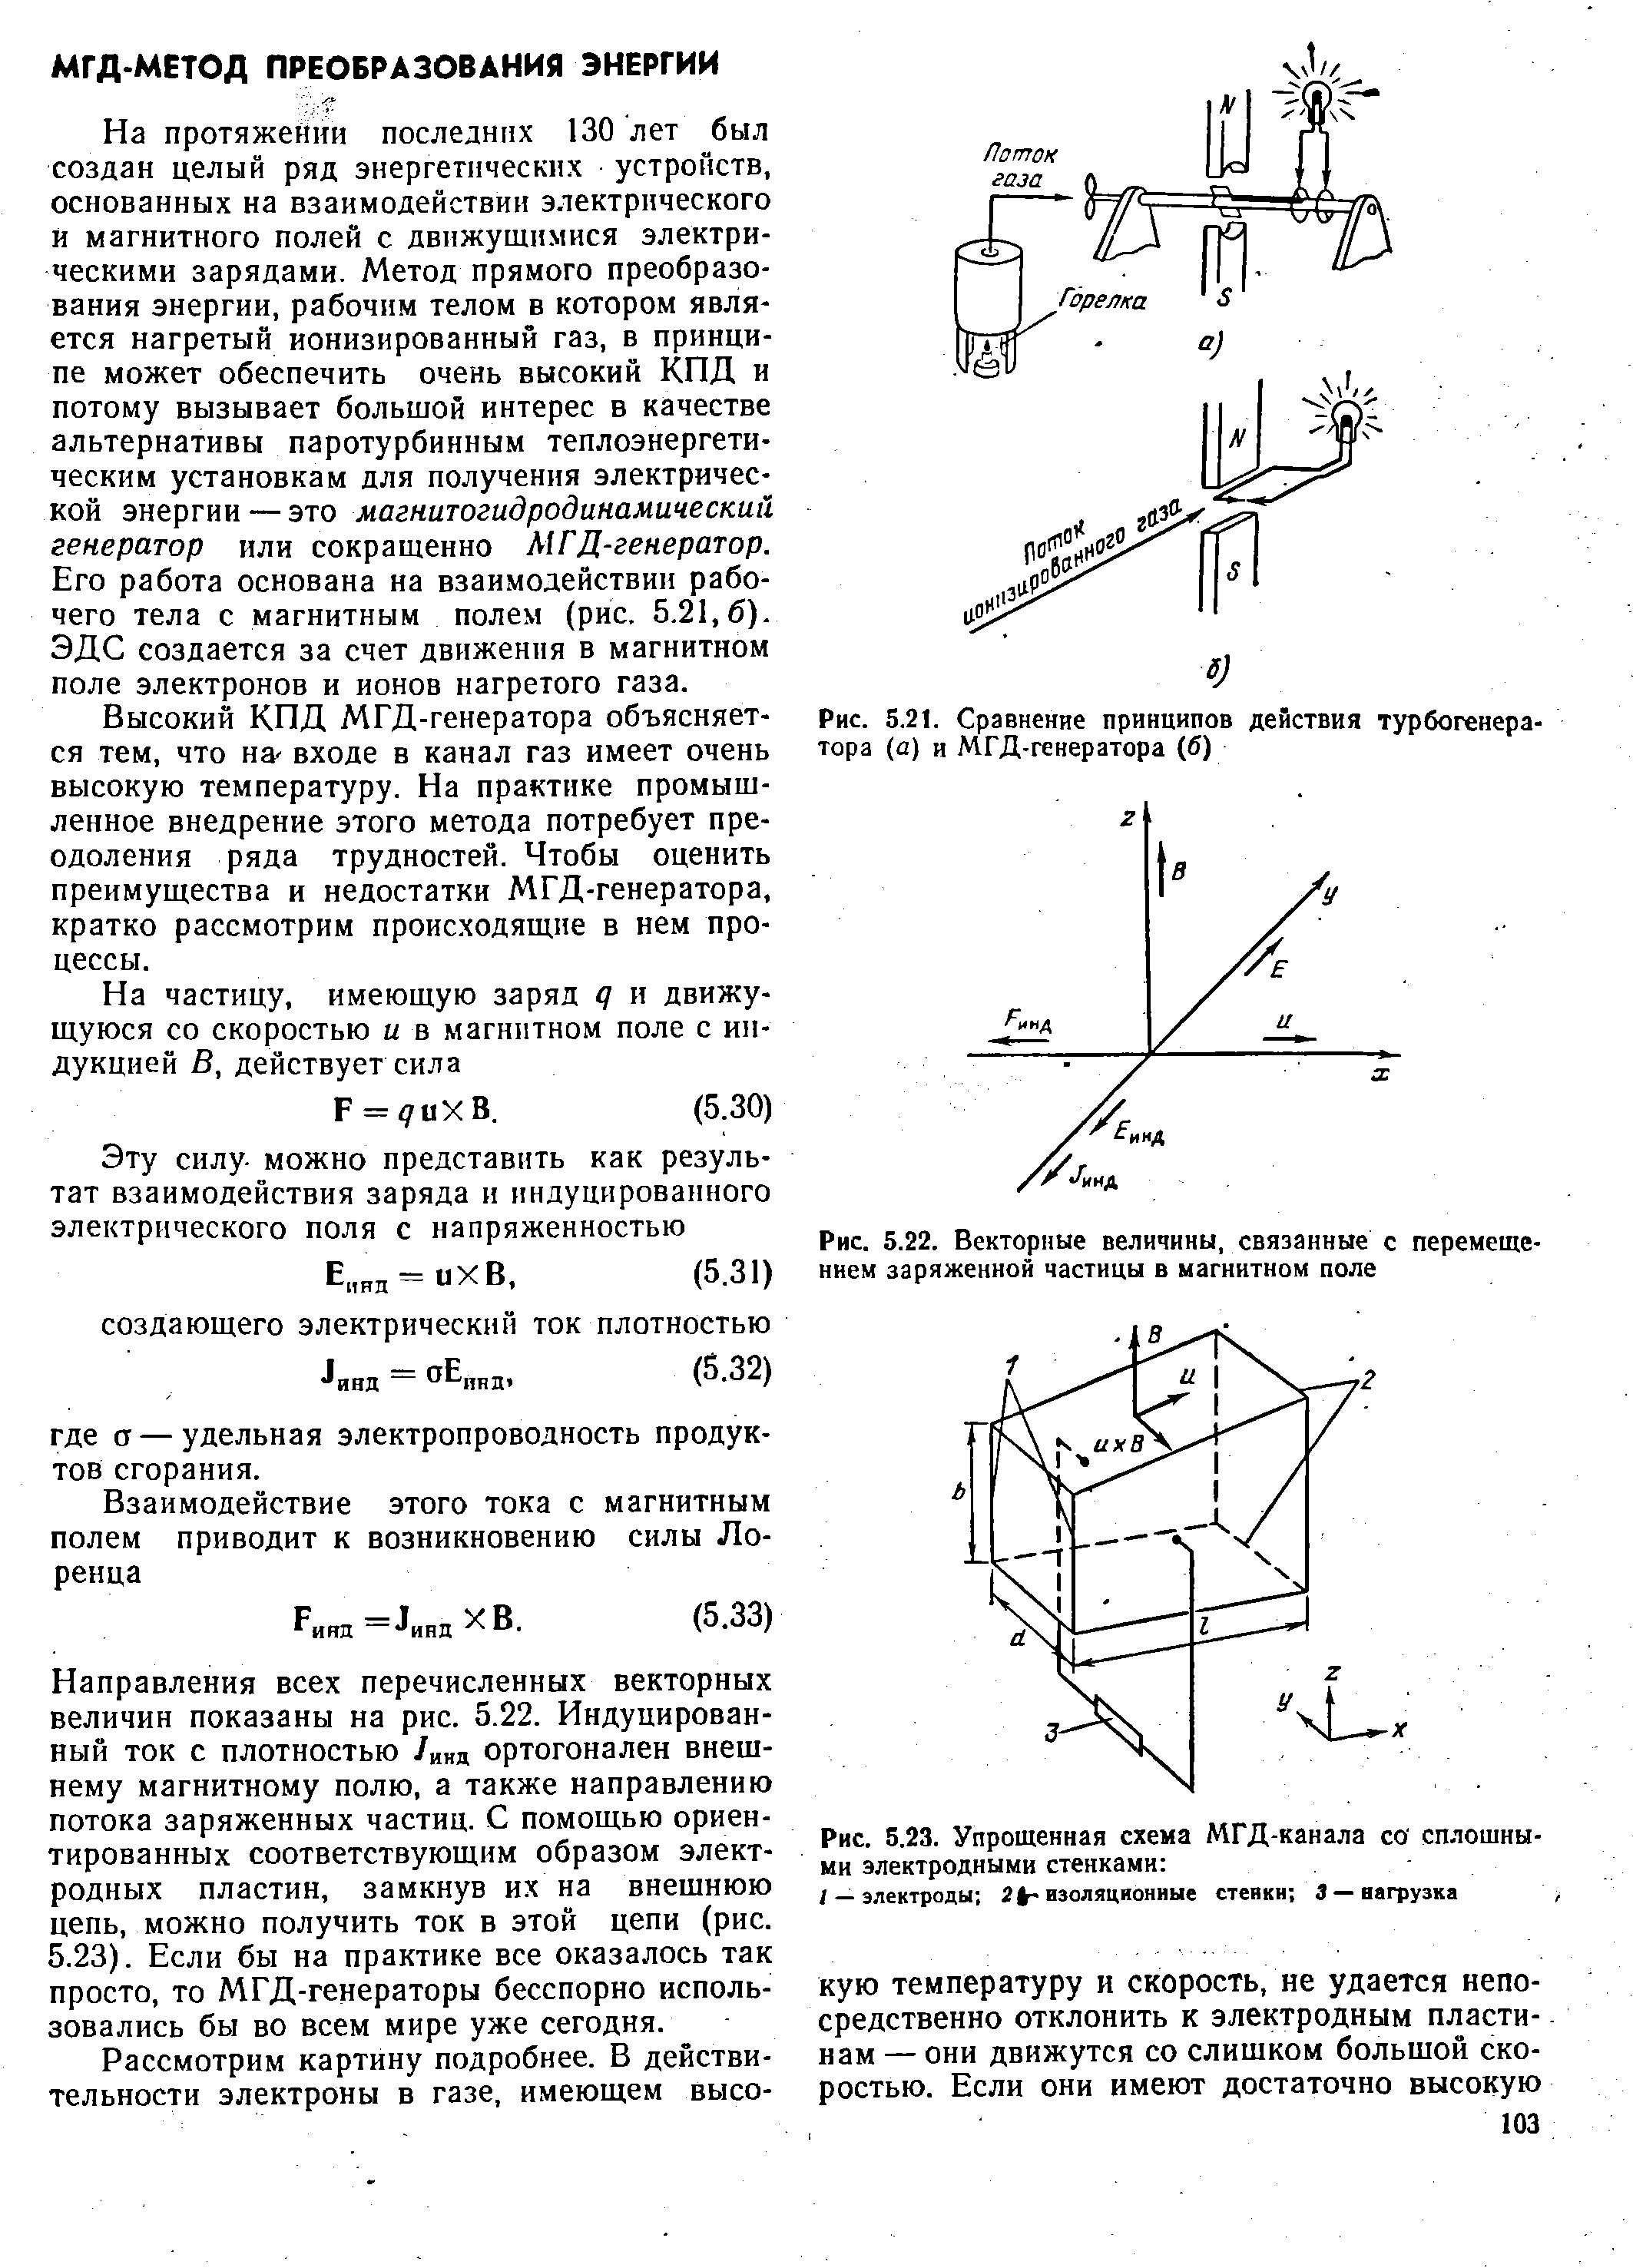 Рис. 5.21. Сравнение принципов действия турбогенератора (а) и МГД-генератора (б)
